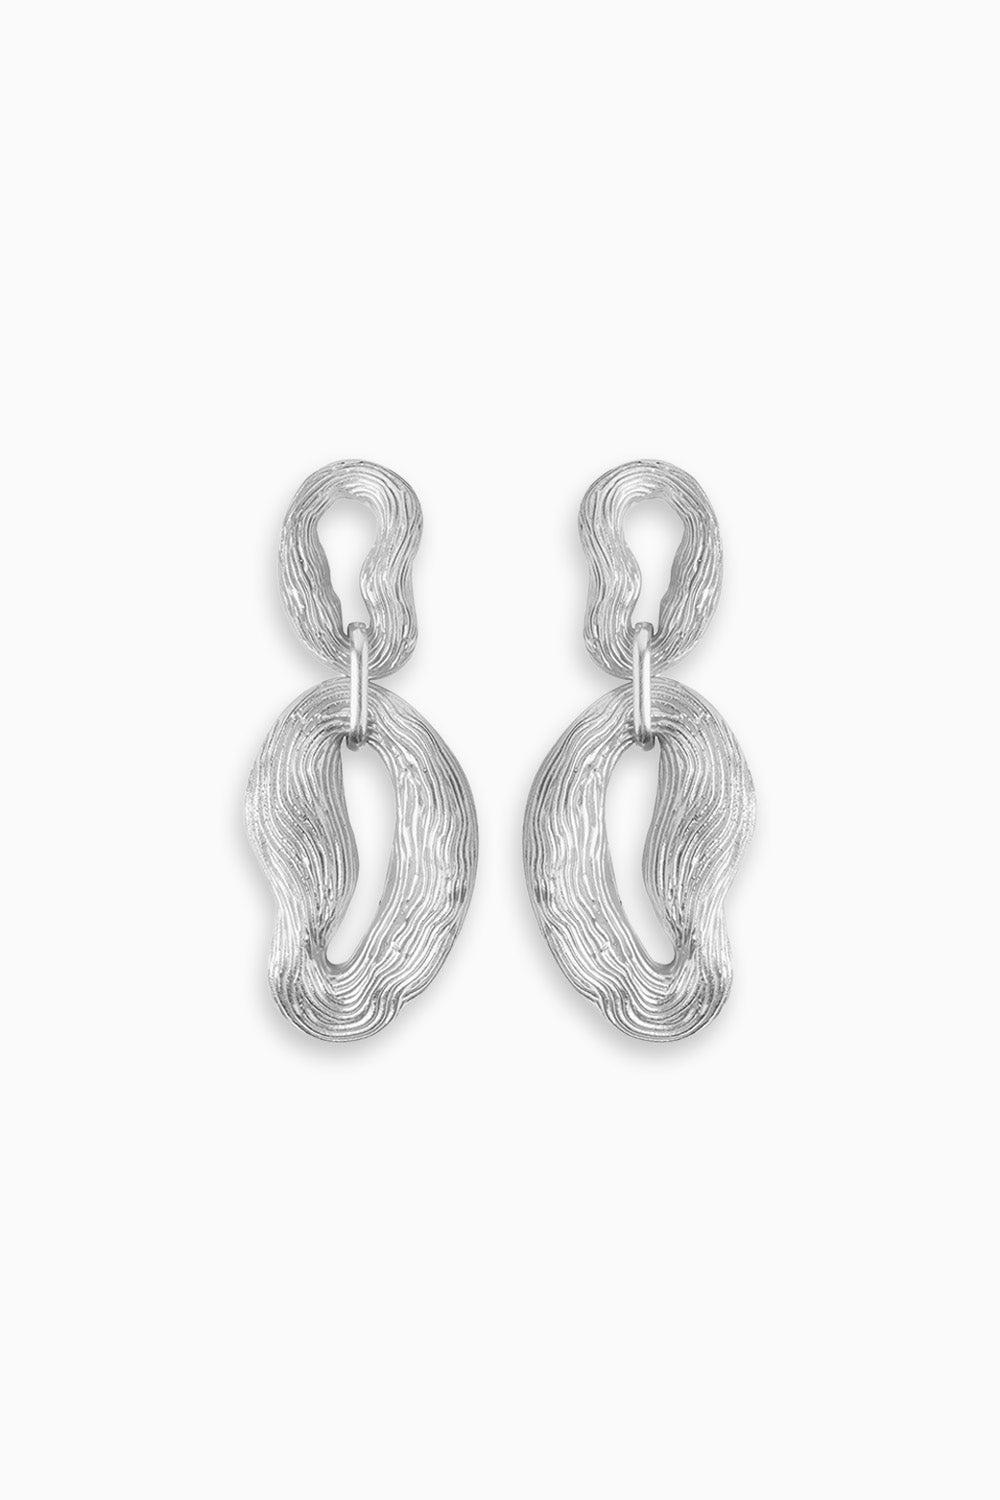 Knotty Pine Earrings - Silver Tone